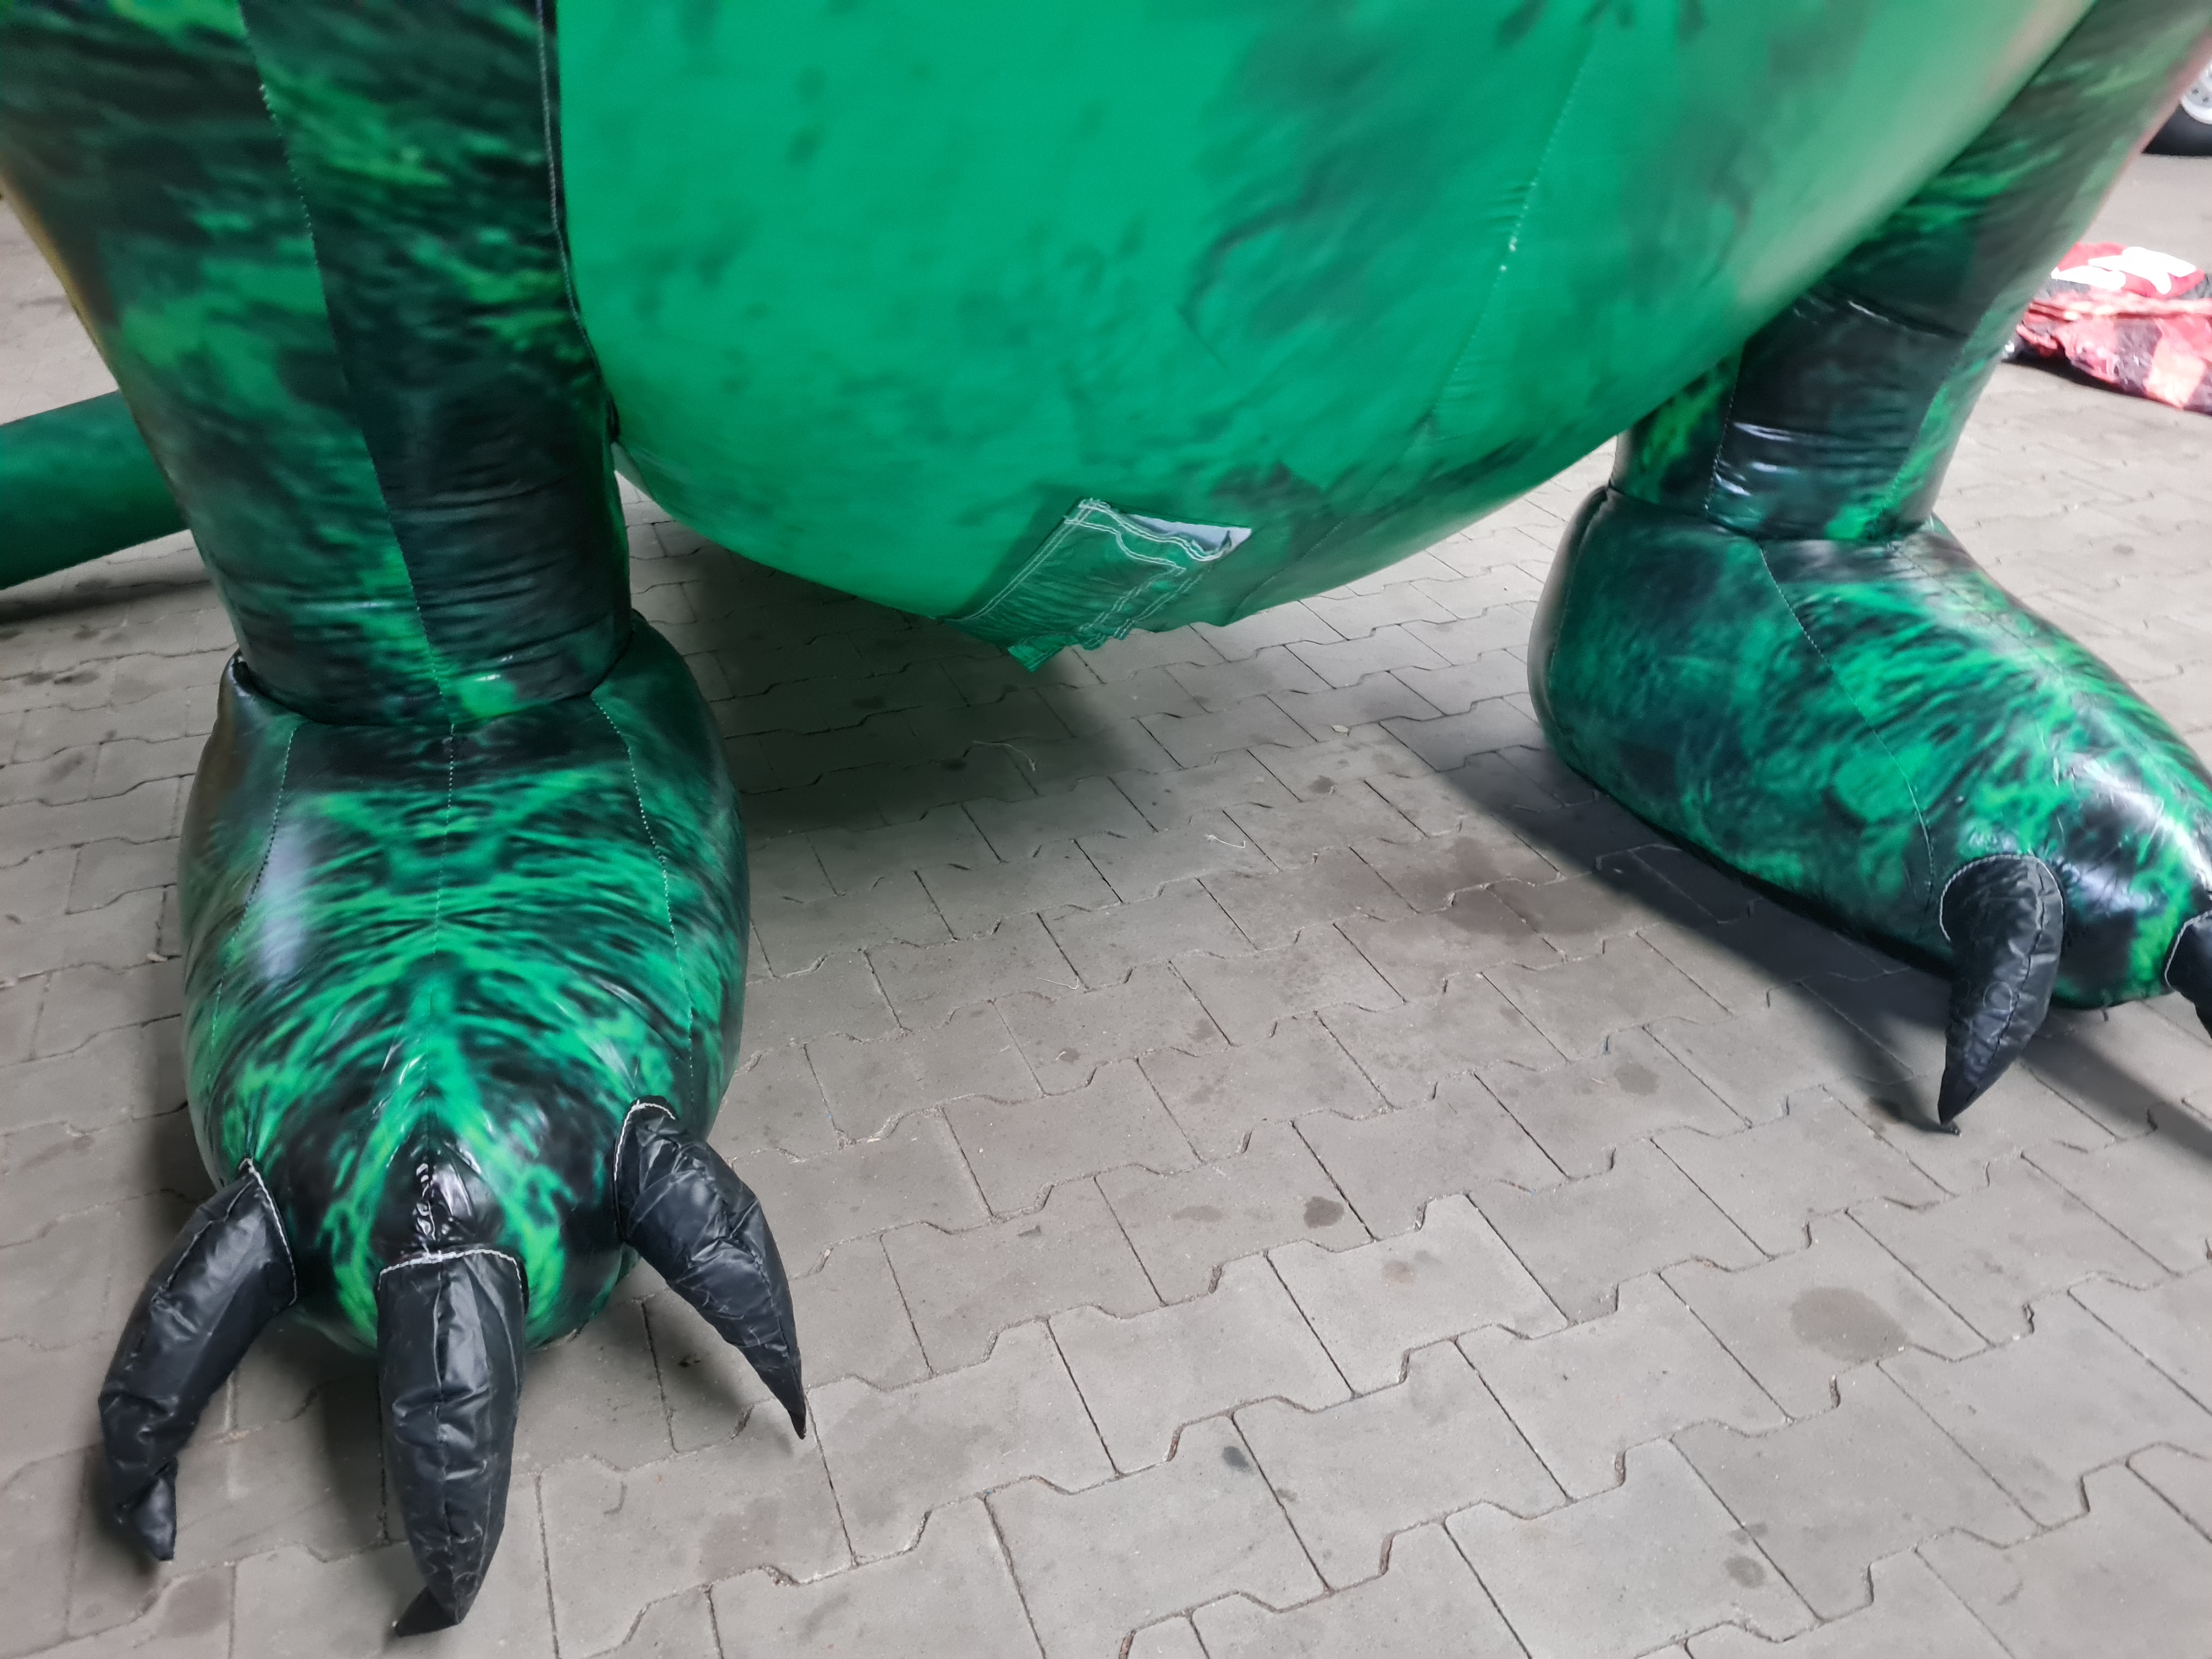  Dinosaurier - stehend - 5 m hoch - grün